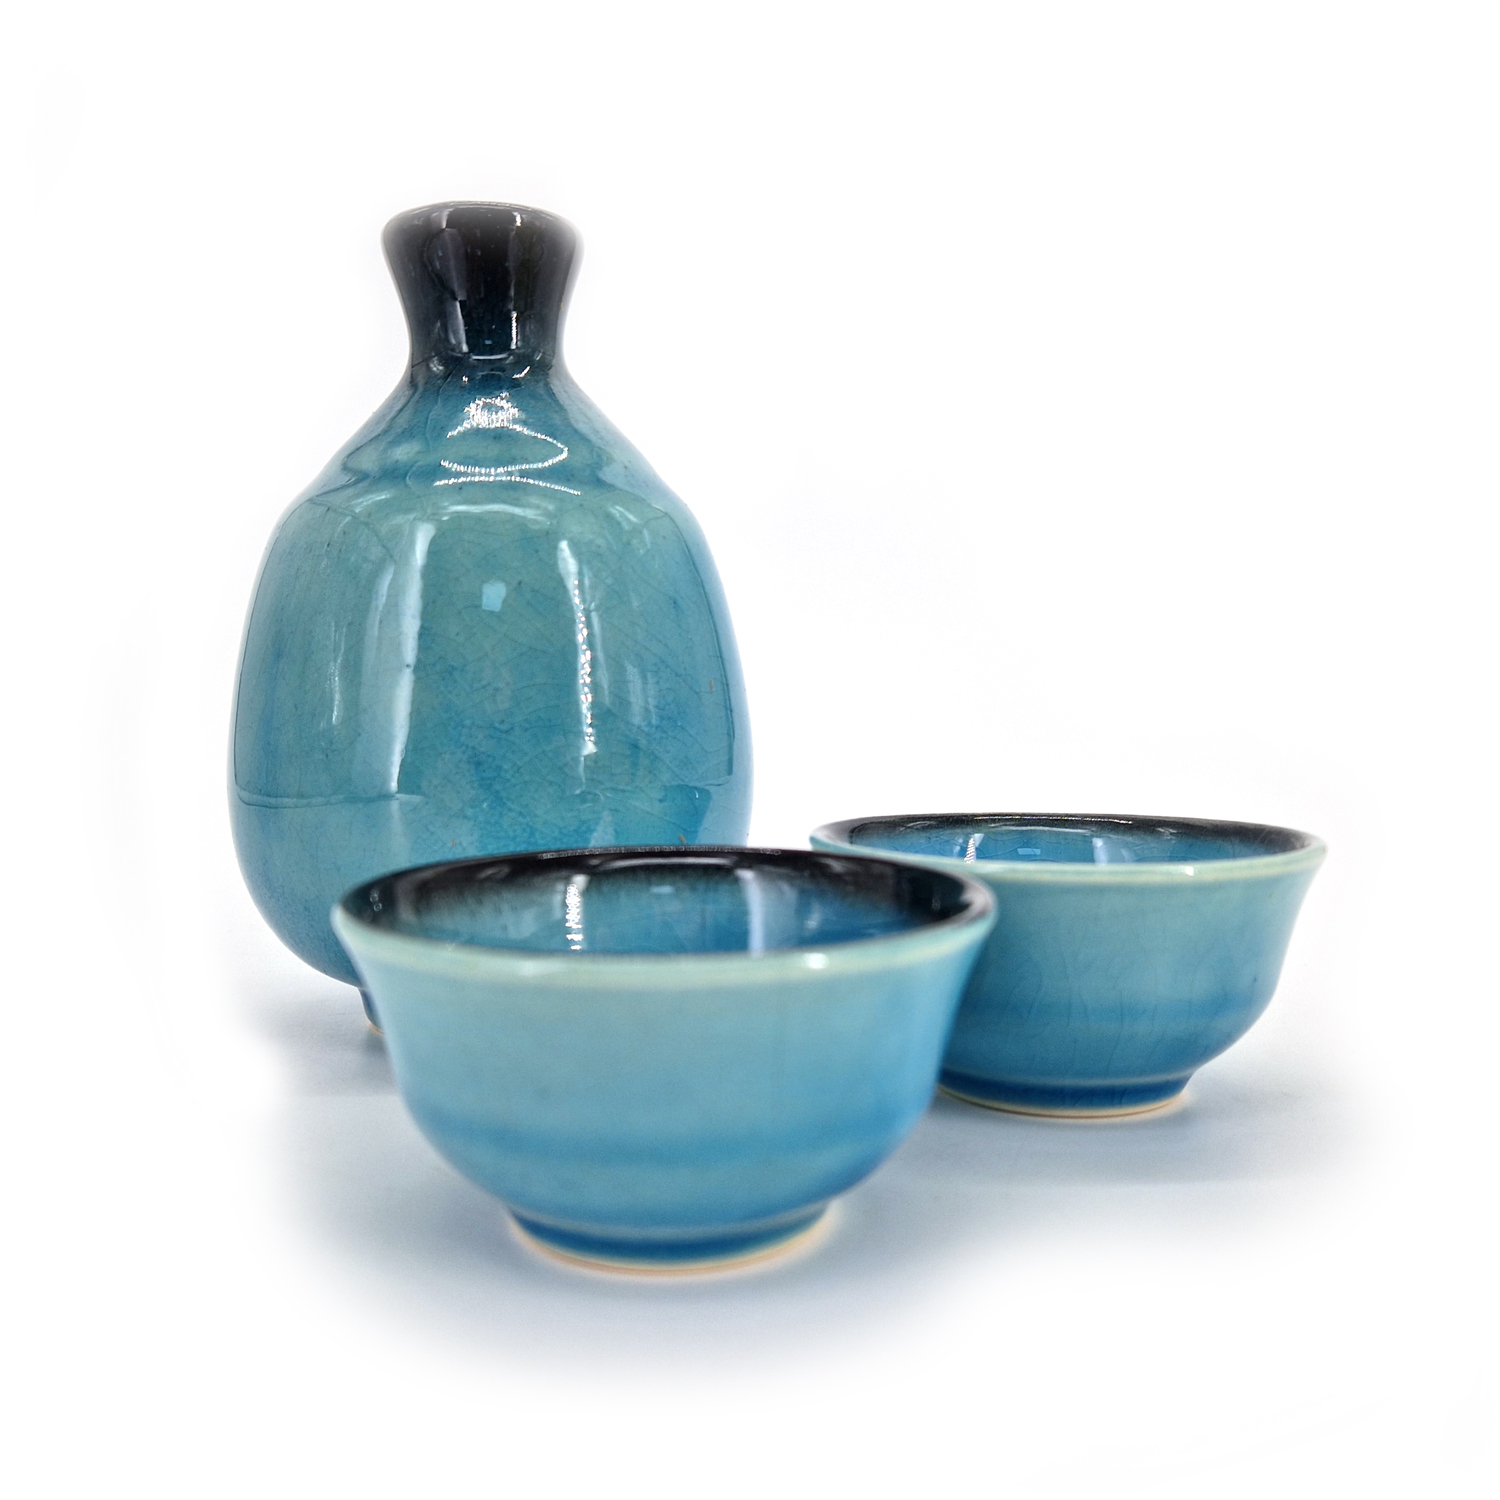 https://nipponboutique.fr/69398/servizio-per-sake-in-ceramica-giapponese-1-bottiglia-e-2-tazze-ragun-blu-laguna.jpg